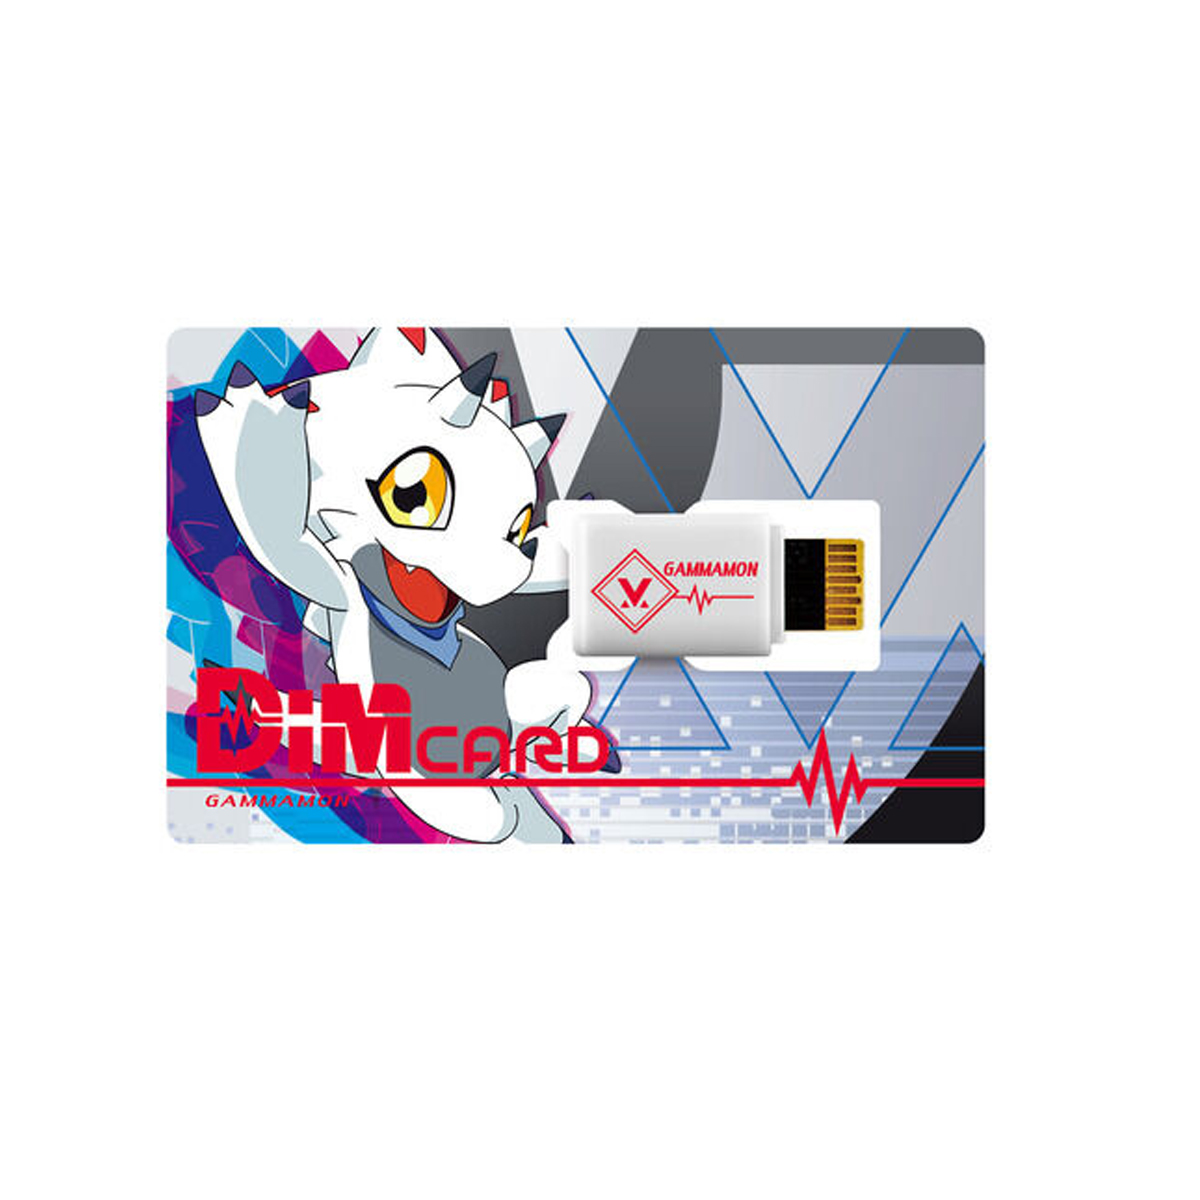 VITAL BRACELET Digital Monster Dim Card V1 and V2 set